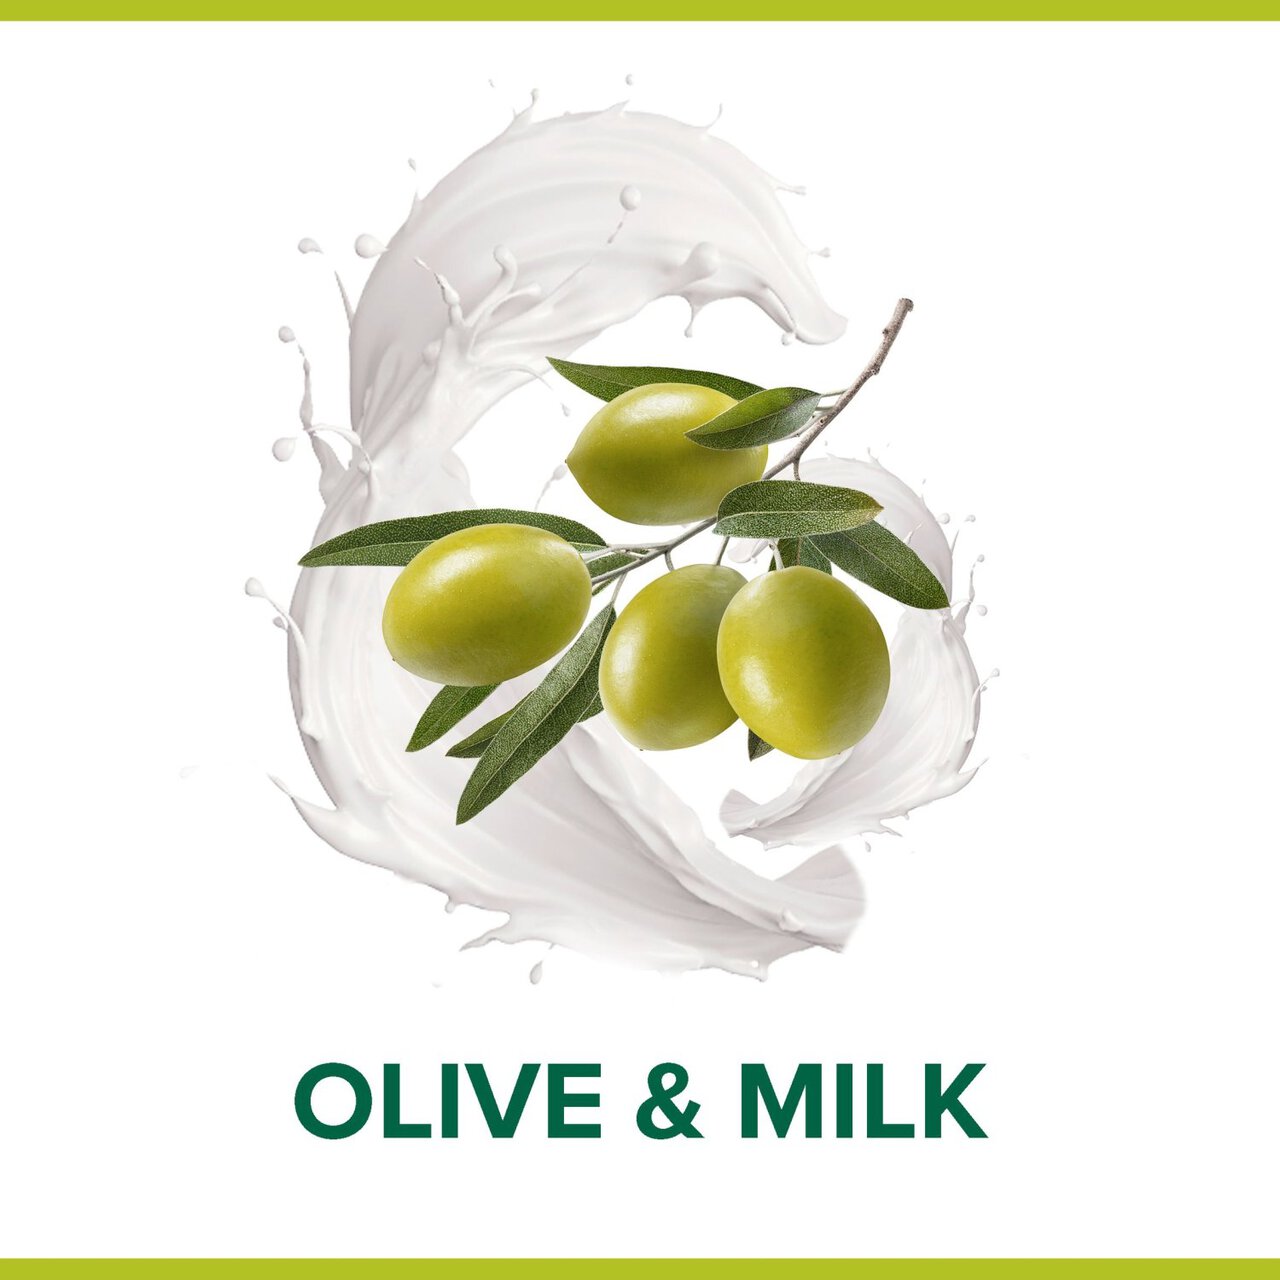 Palmolive Naturals Olive & Milk Shower Gel 750ml